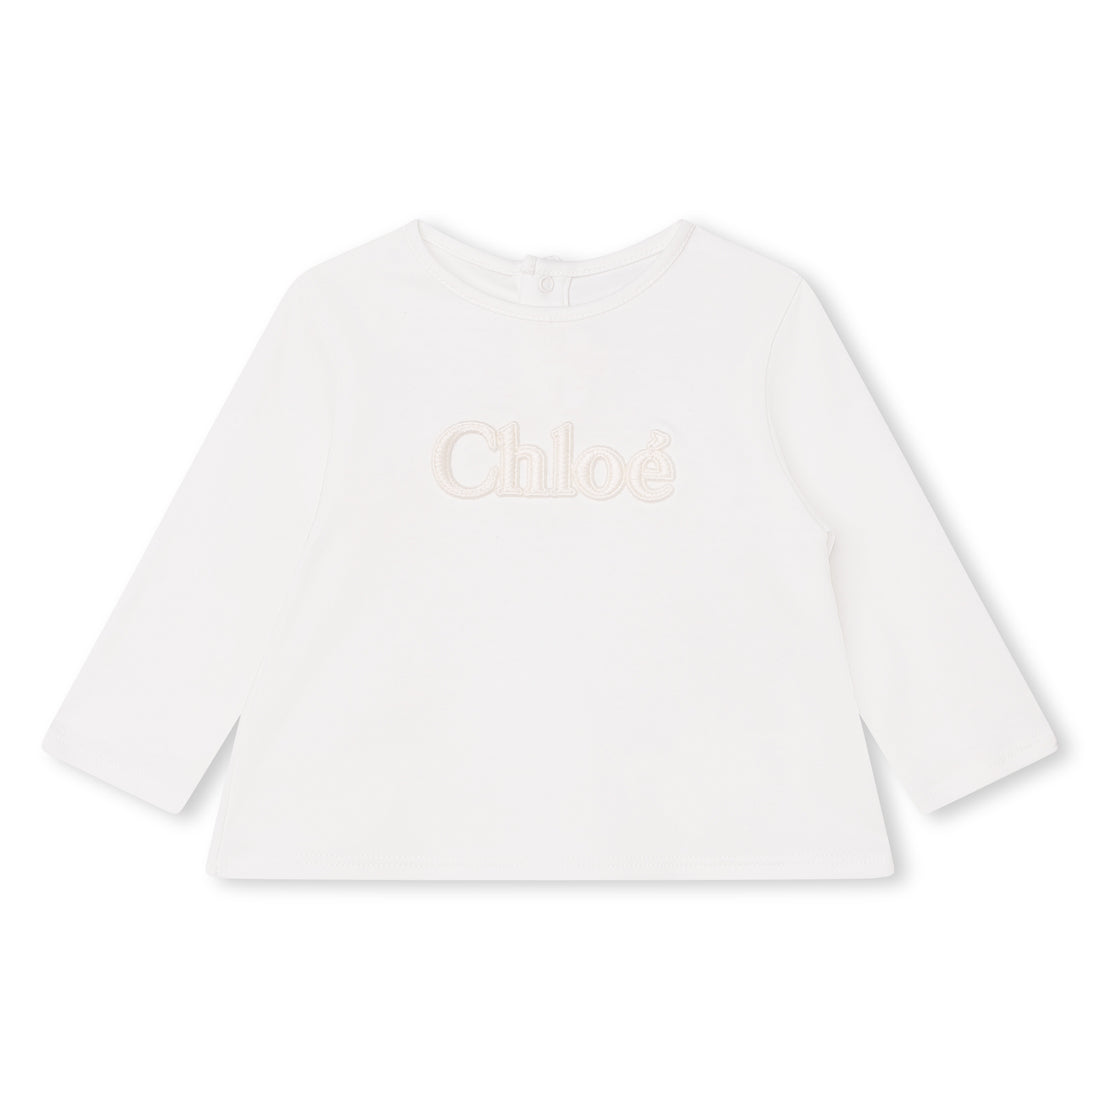 Chloe T-Shirt Style: C05450